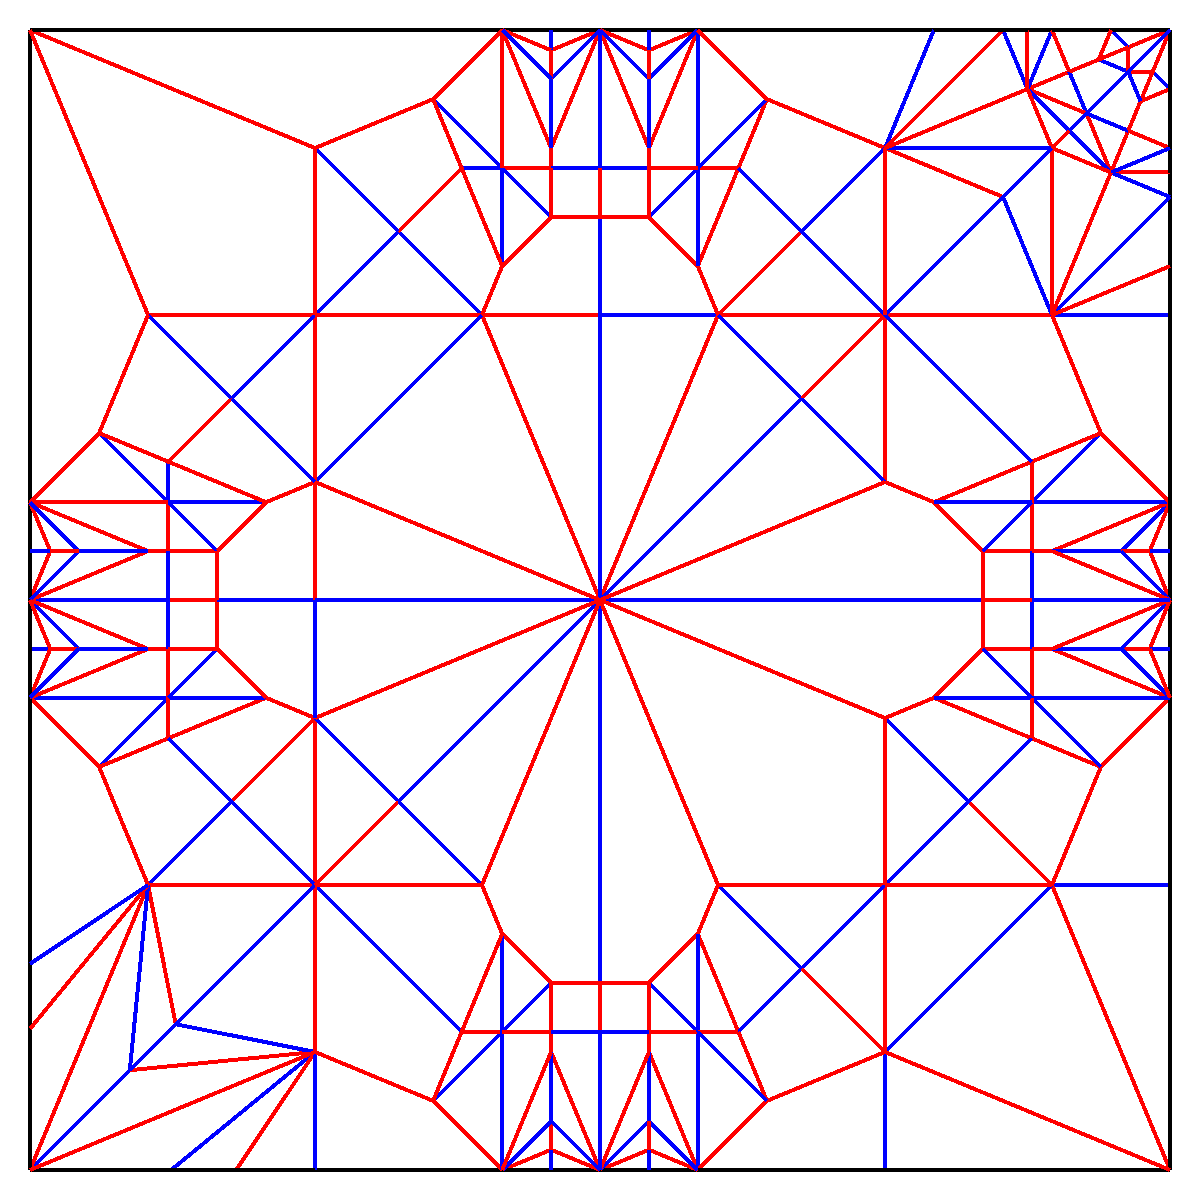 しいたけ 展開図 見ての通りのシンプルな4鶴設計 仕上げが長いから展開図折りはちょっと難しいかも 展開図 折り紙